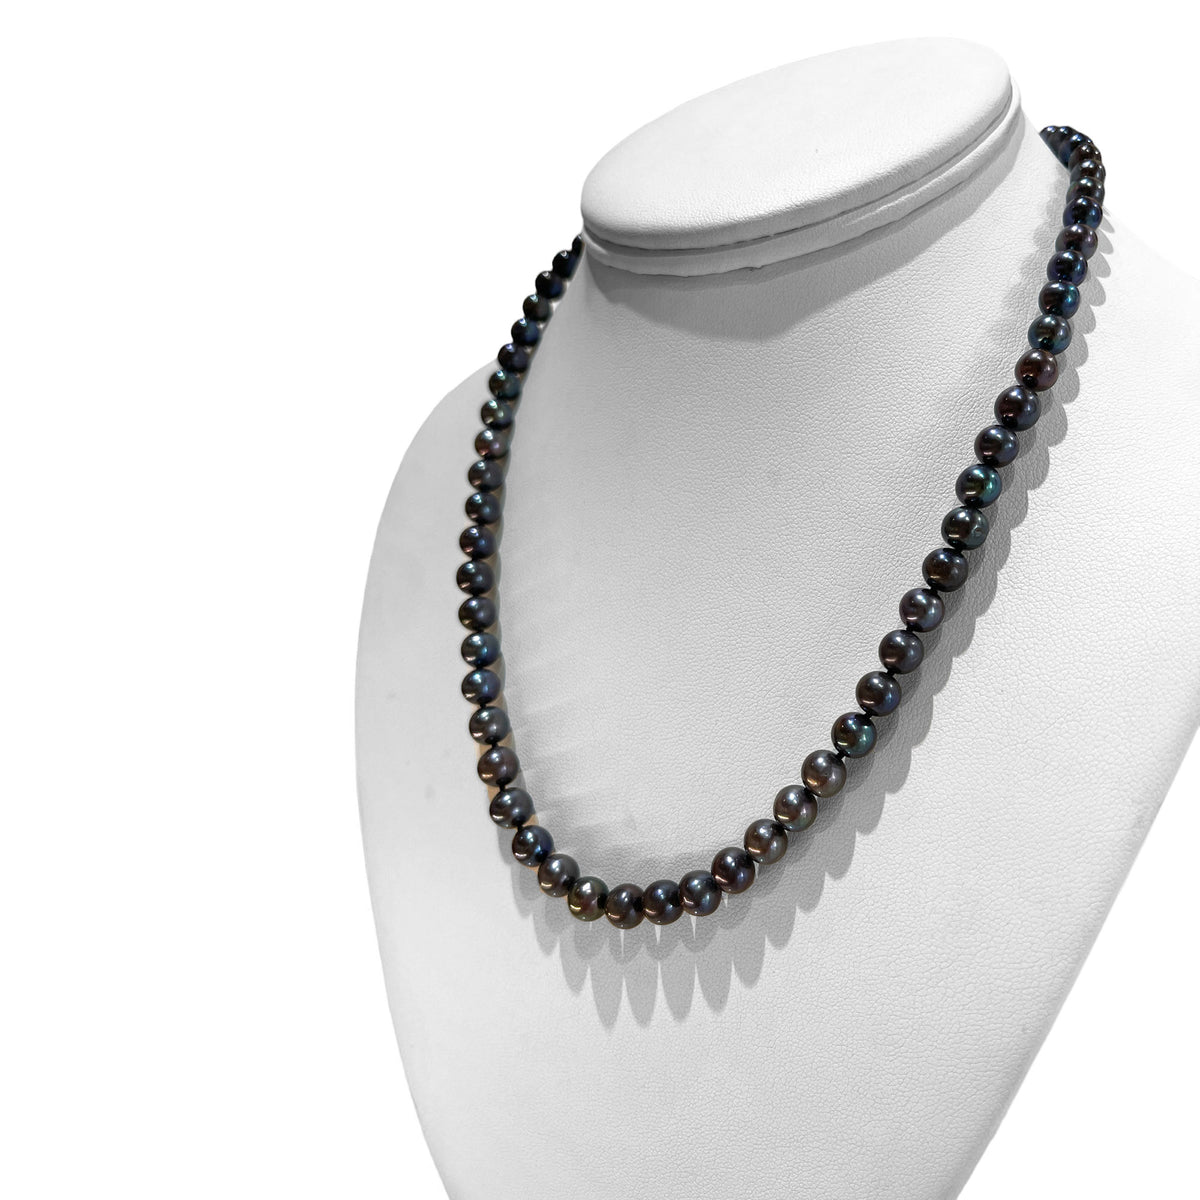 Black Pearl Necklace and Bracelet Set 7mm